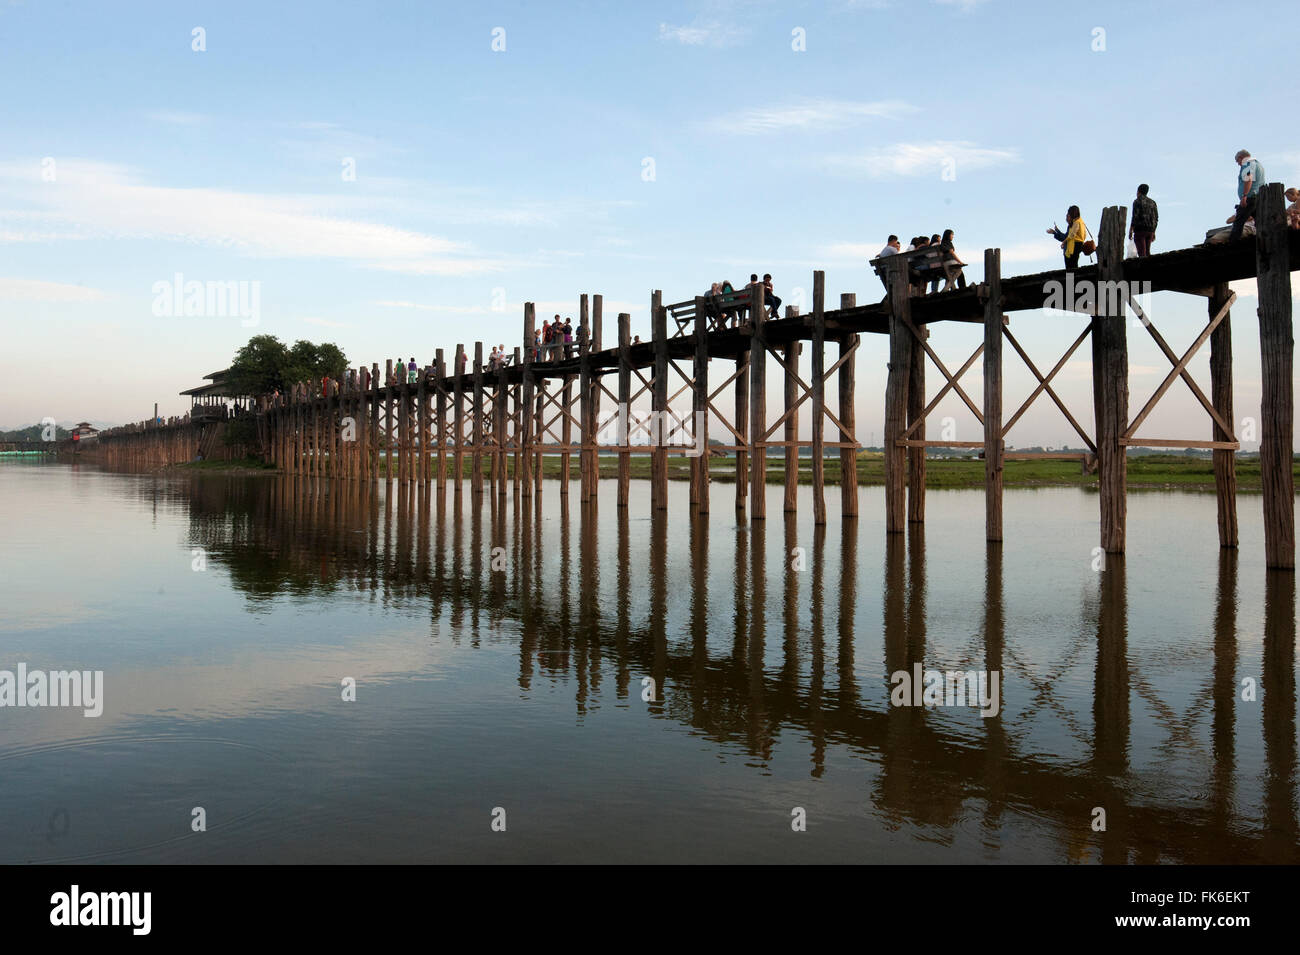 Menschen U Bein Brücke, unterstützt von 984 Teak Beiträge über 1,2 km Entfernung in Thaumthaman Lake, Mandalay, Myanmar Stockfoto